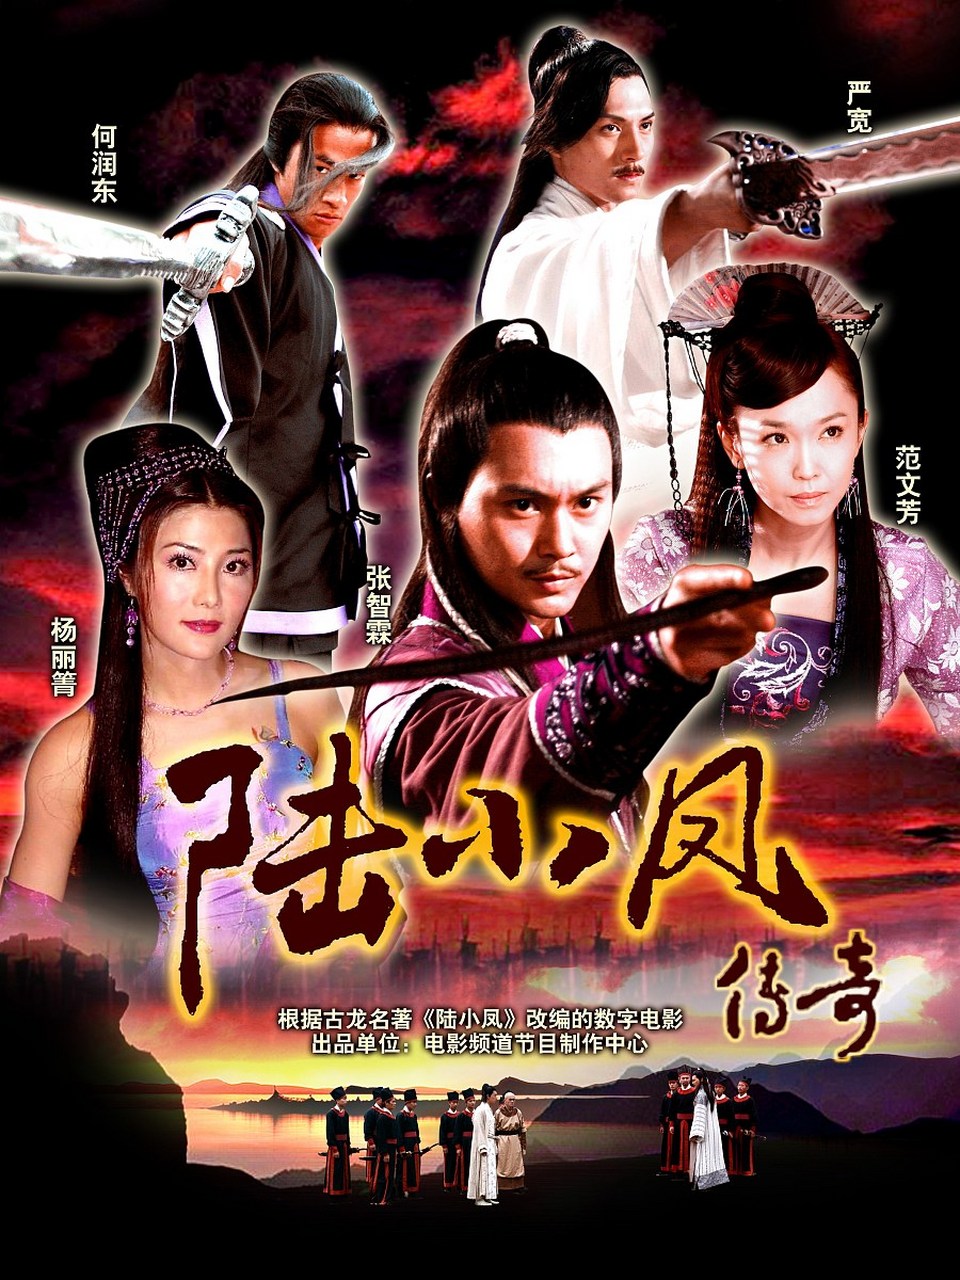 《陆小凤传奇》是中央电视台电影频道出品的系列数字电影,由邓衍成